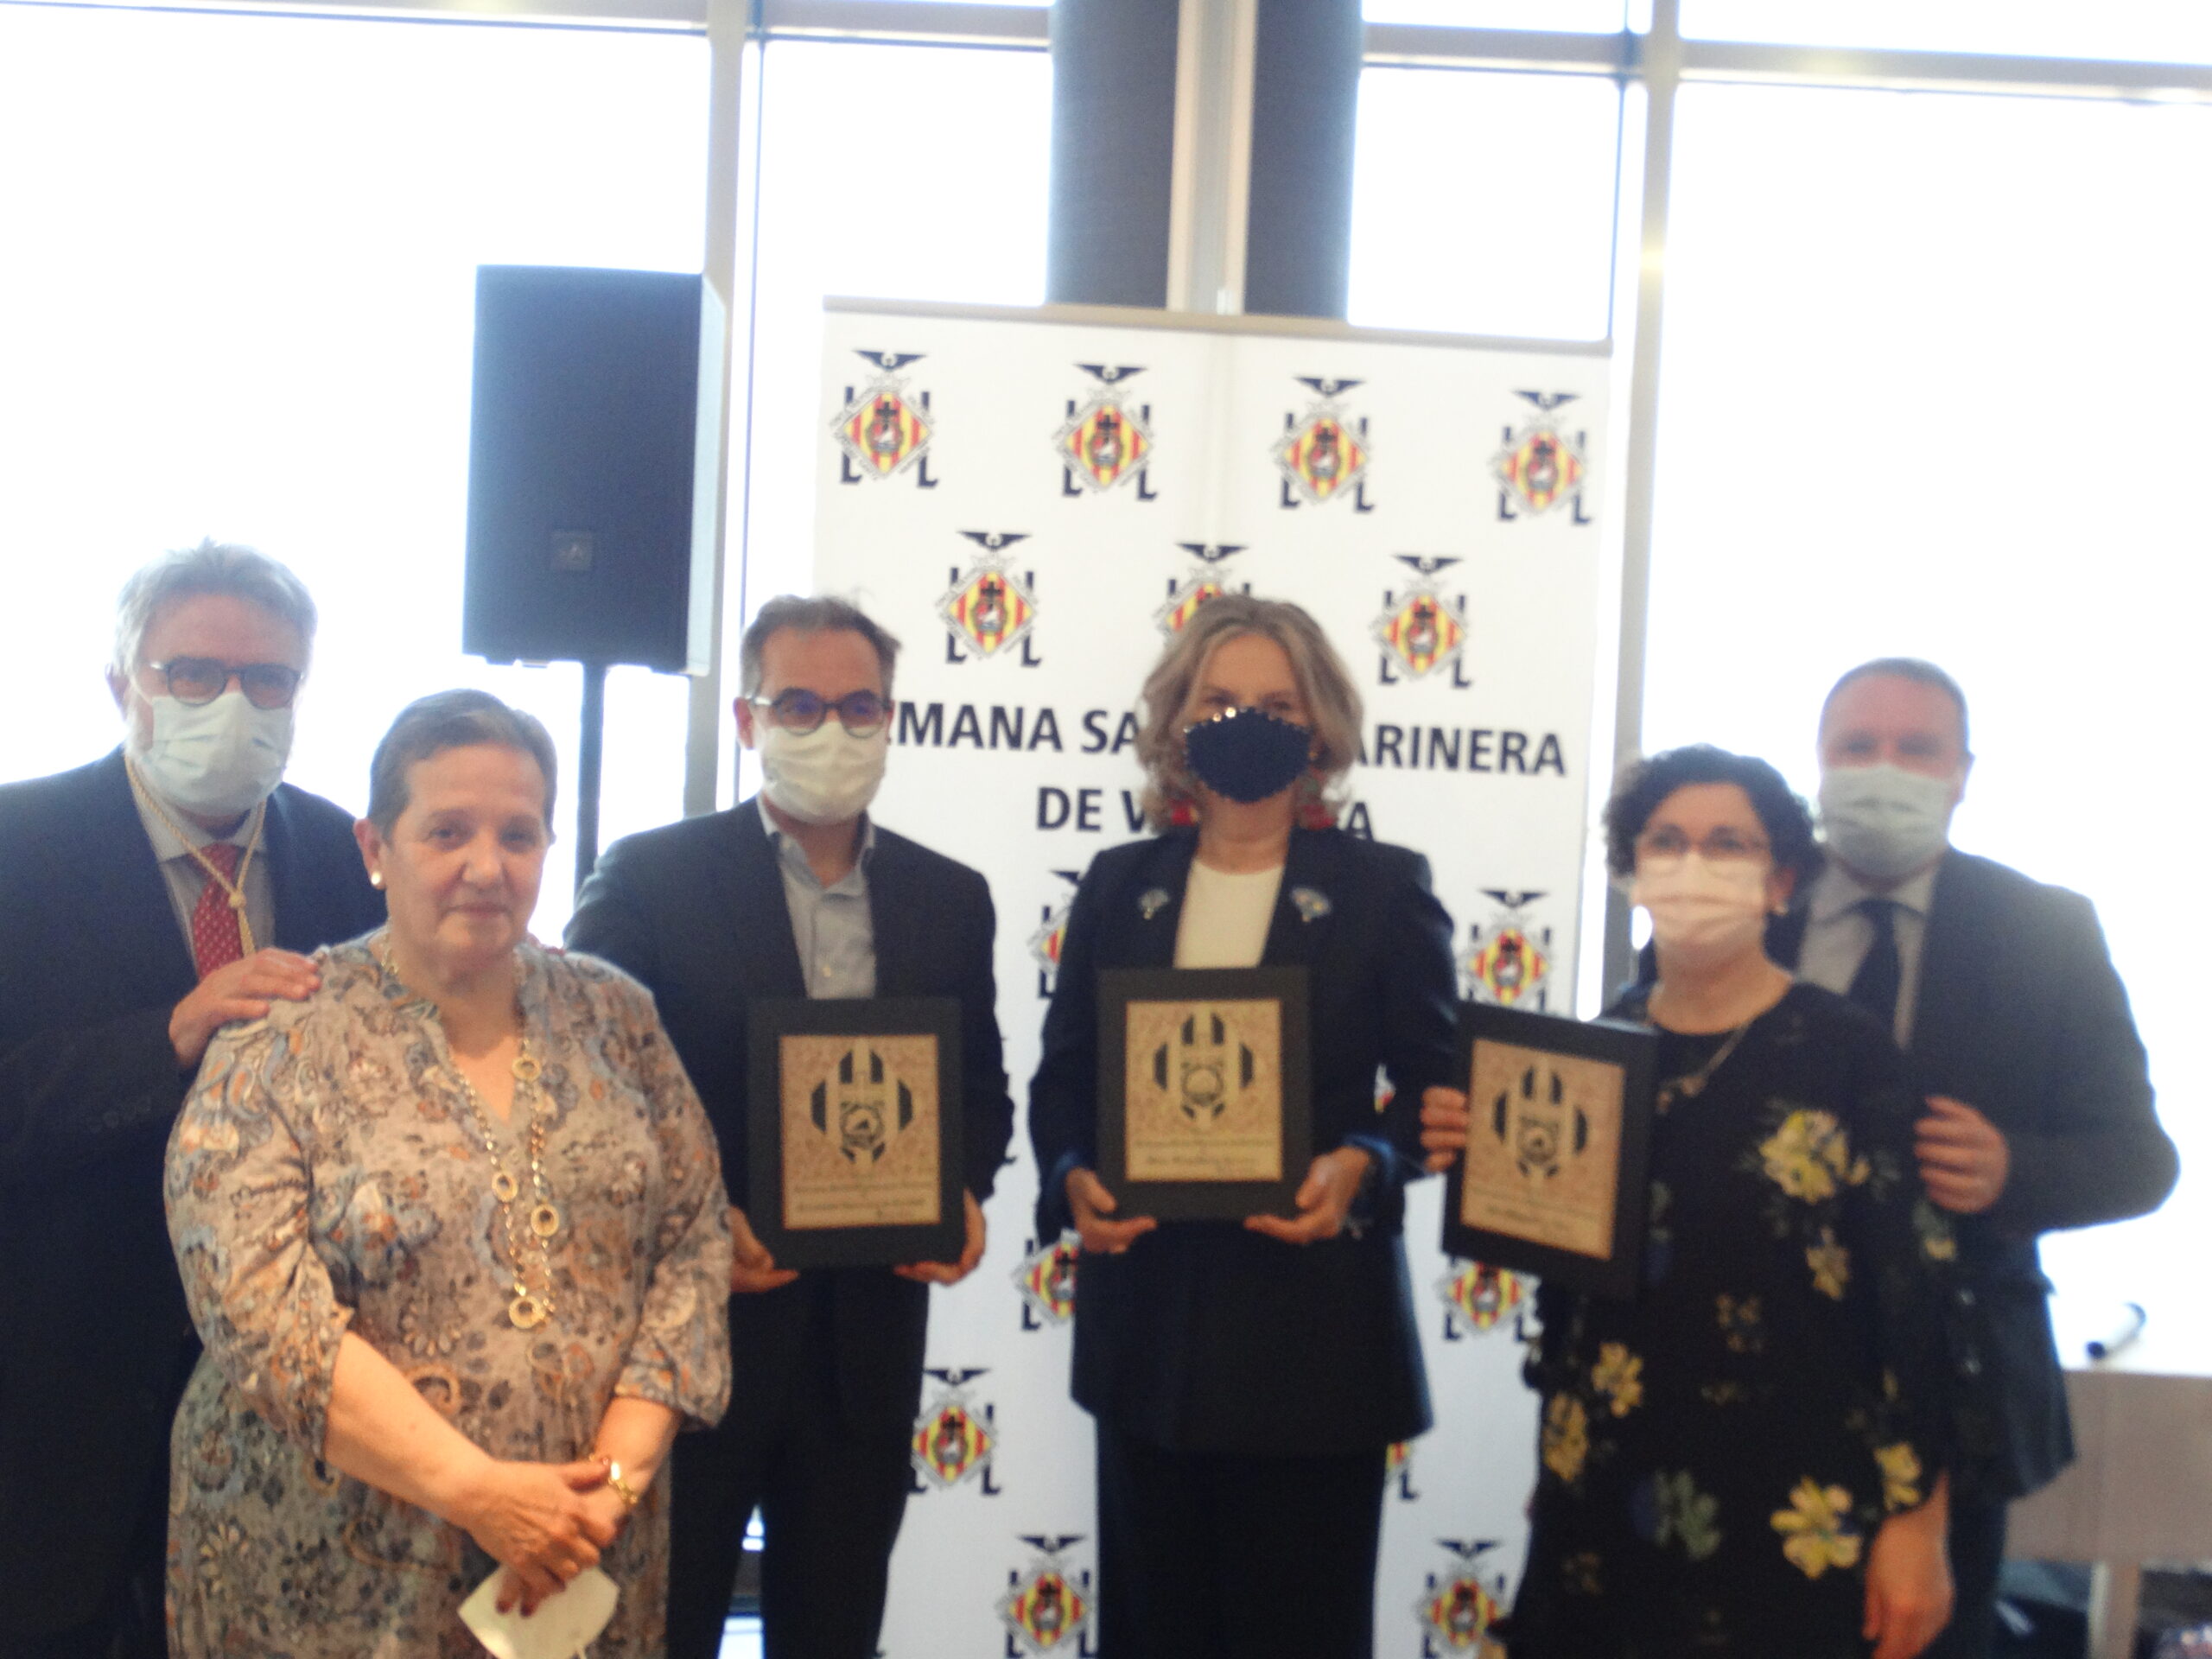 Junta Mayor presents its silver medals and the Semana Santa Marinera Awards